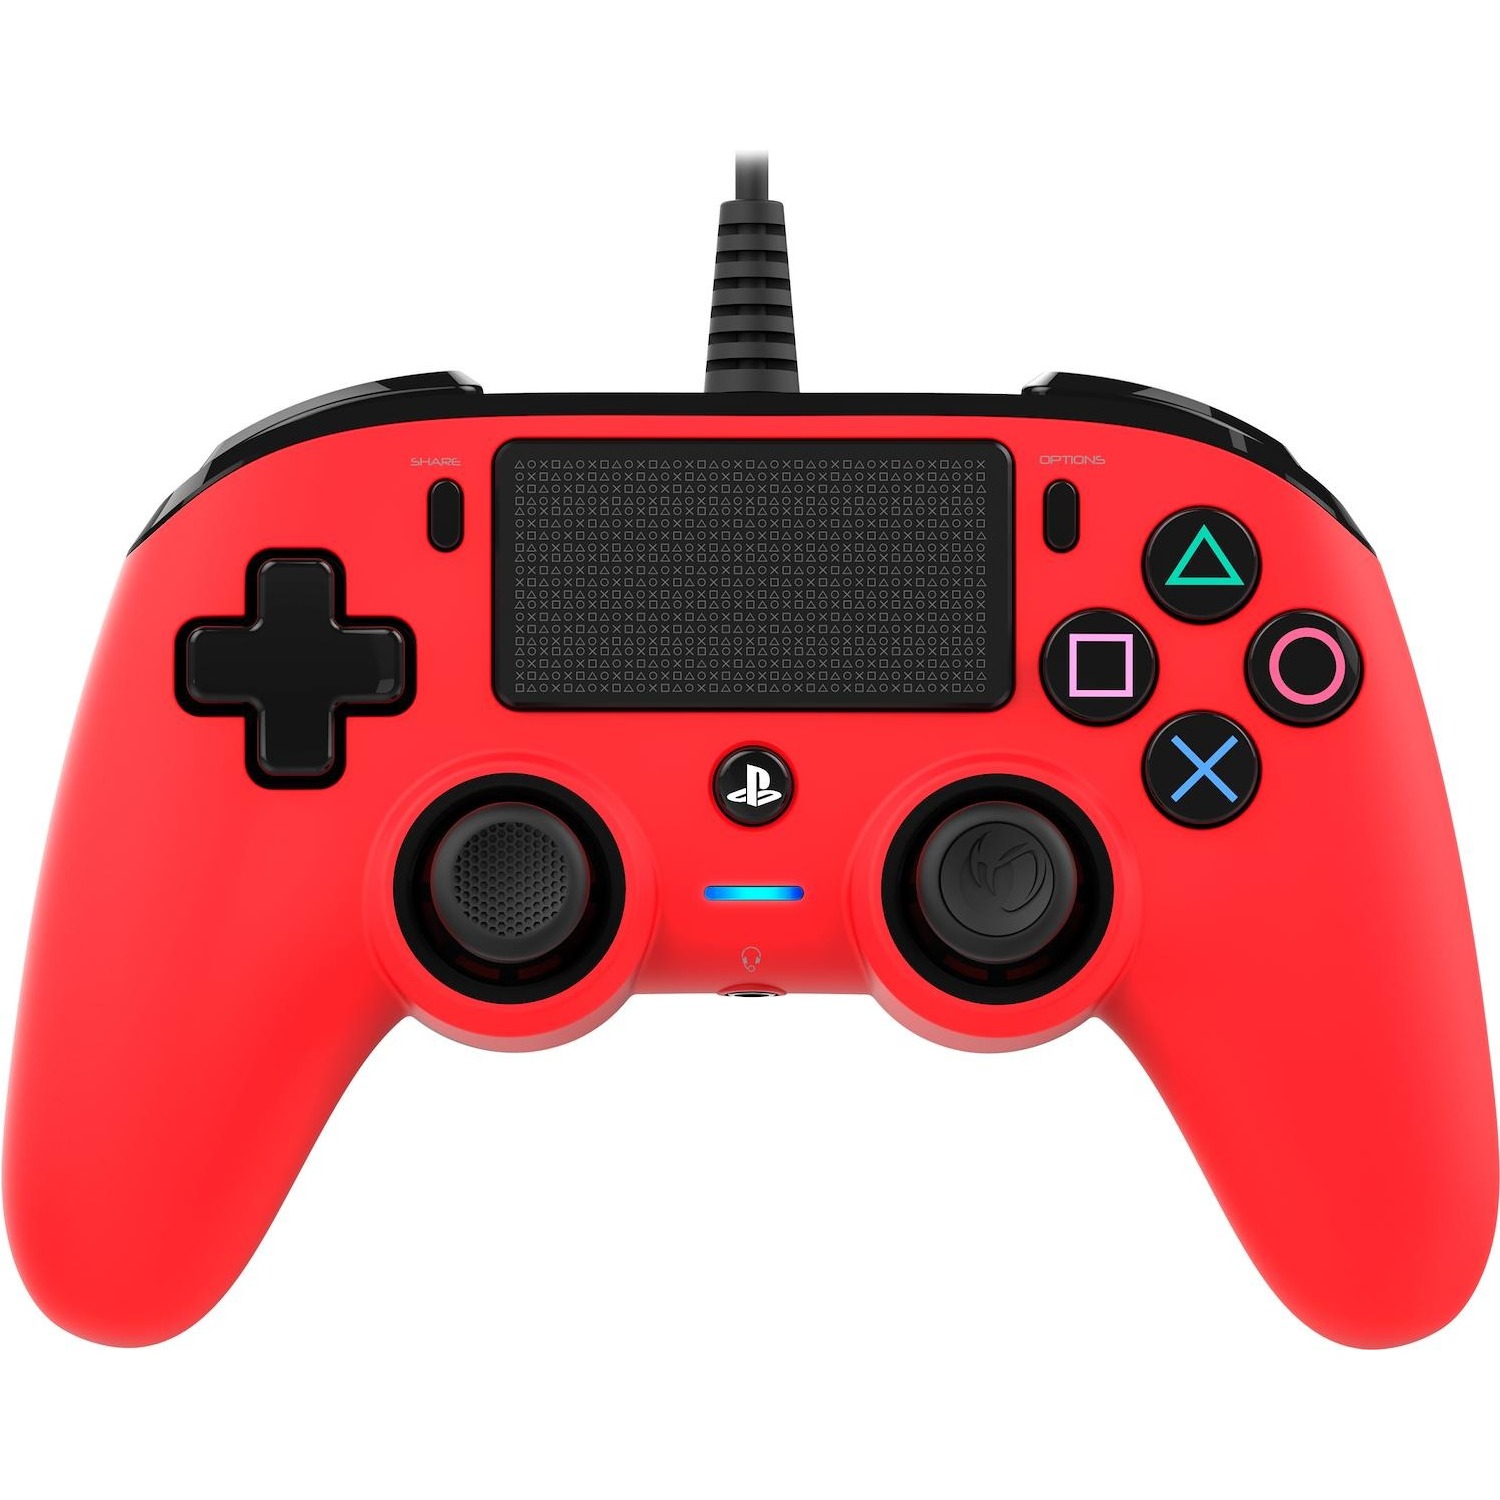 Immagine per Nacon PS4 Pad compact red wired da DIMOStore